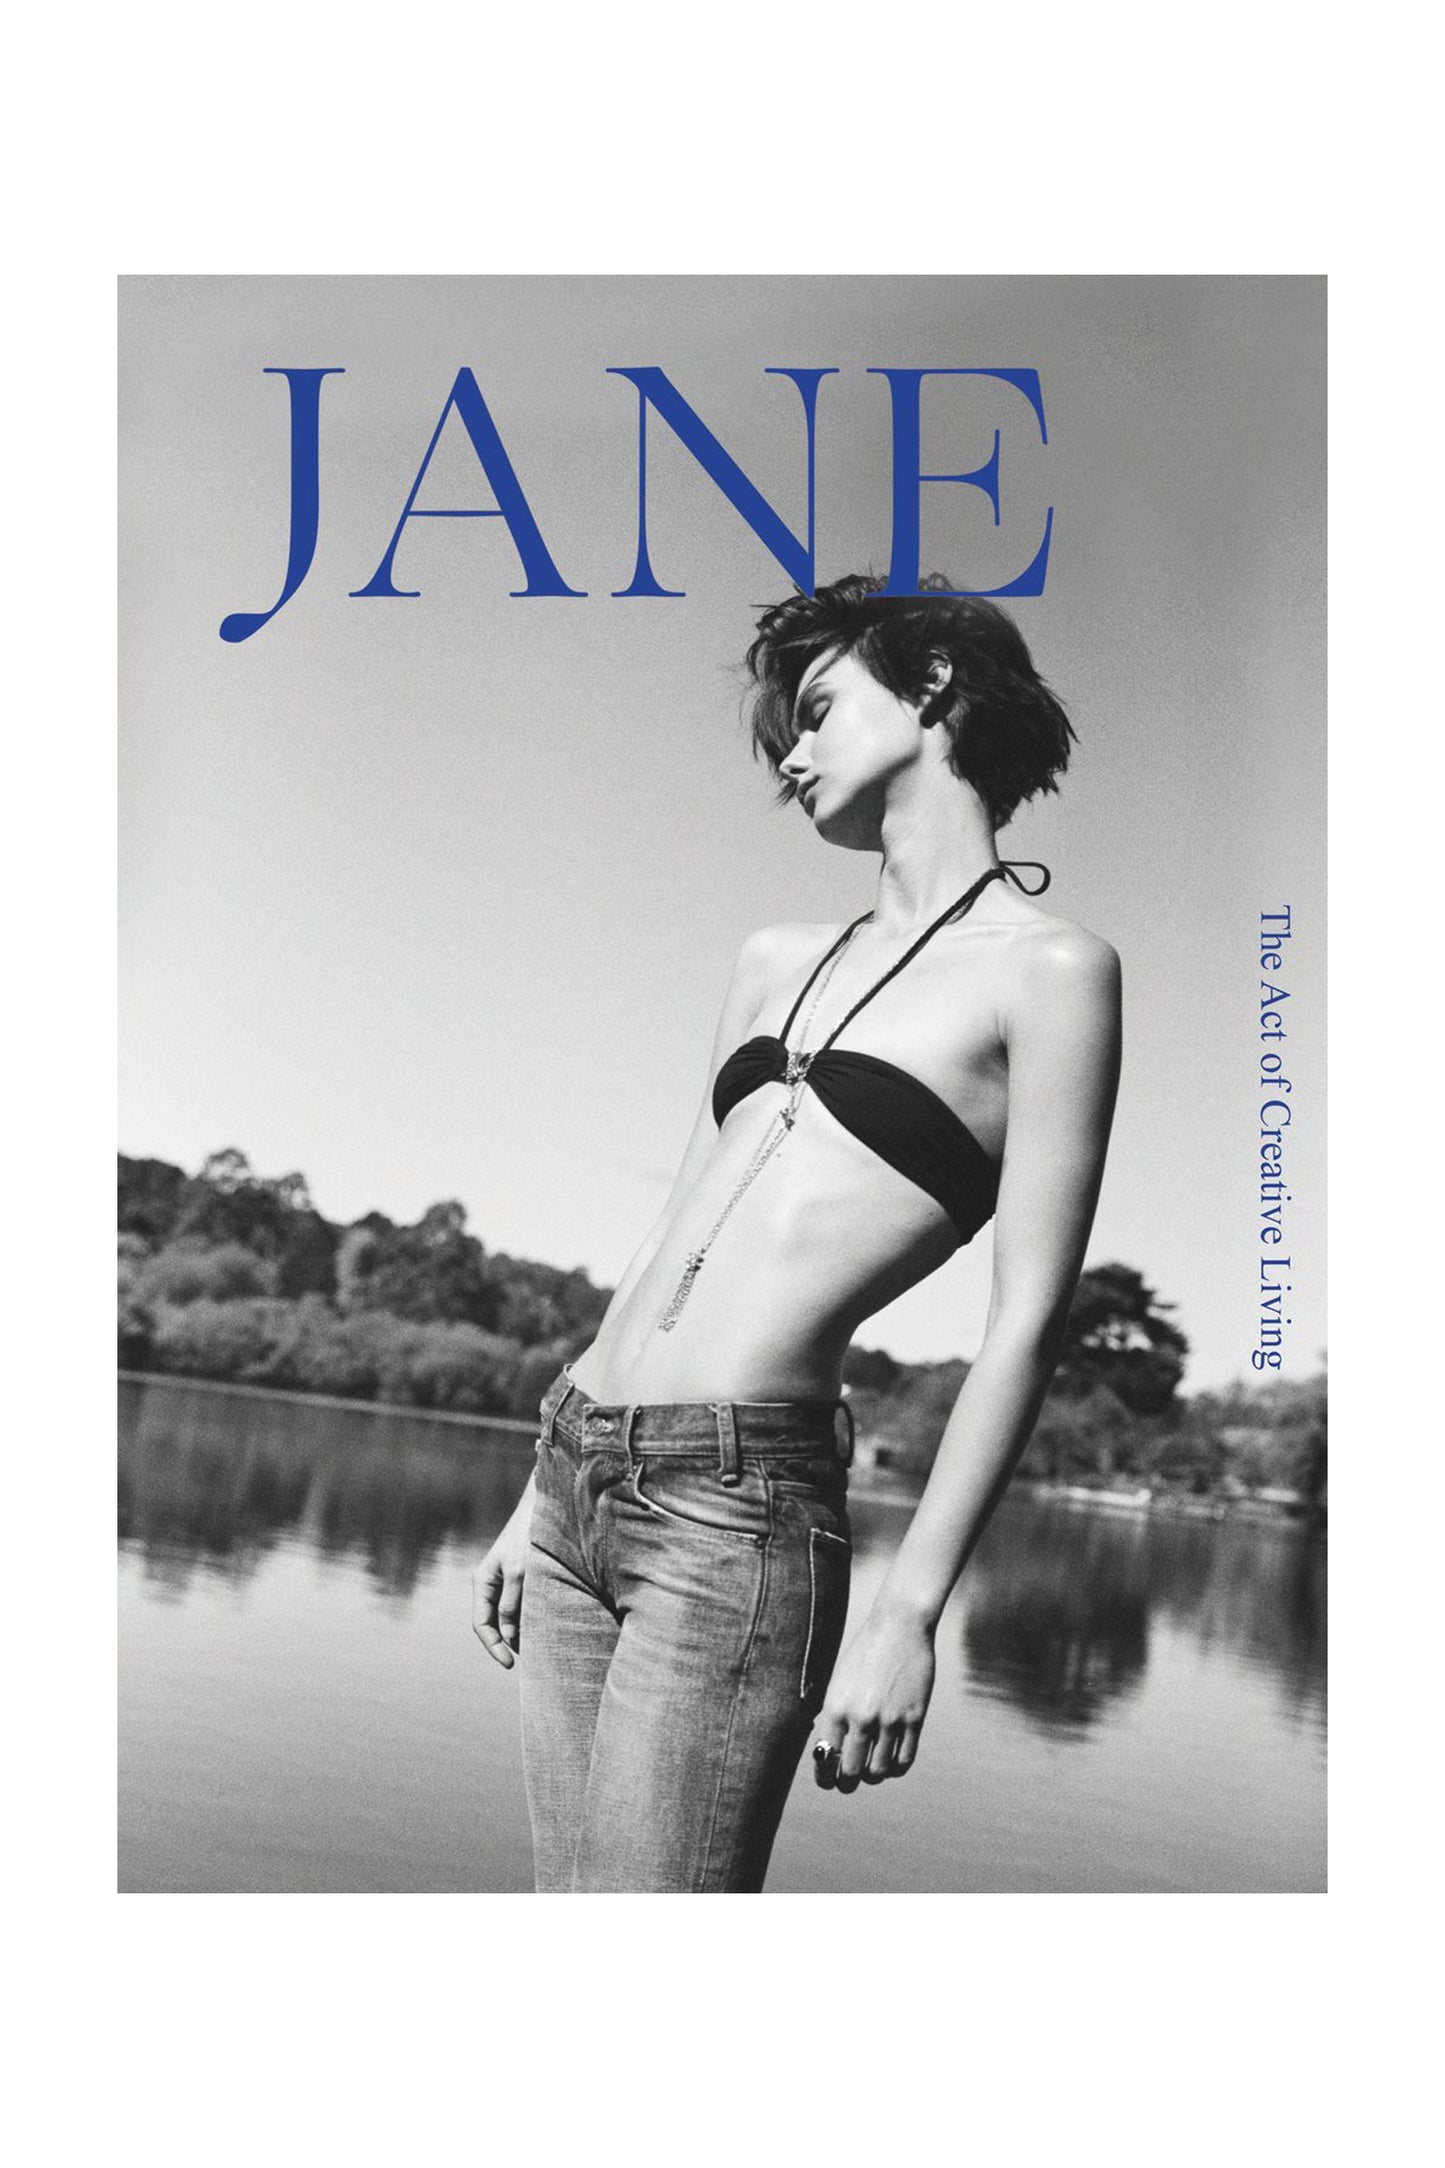 JANE Issue 13